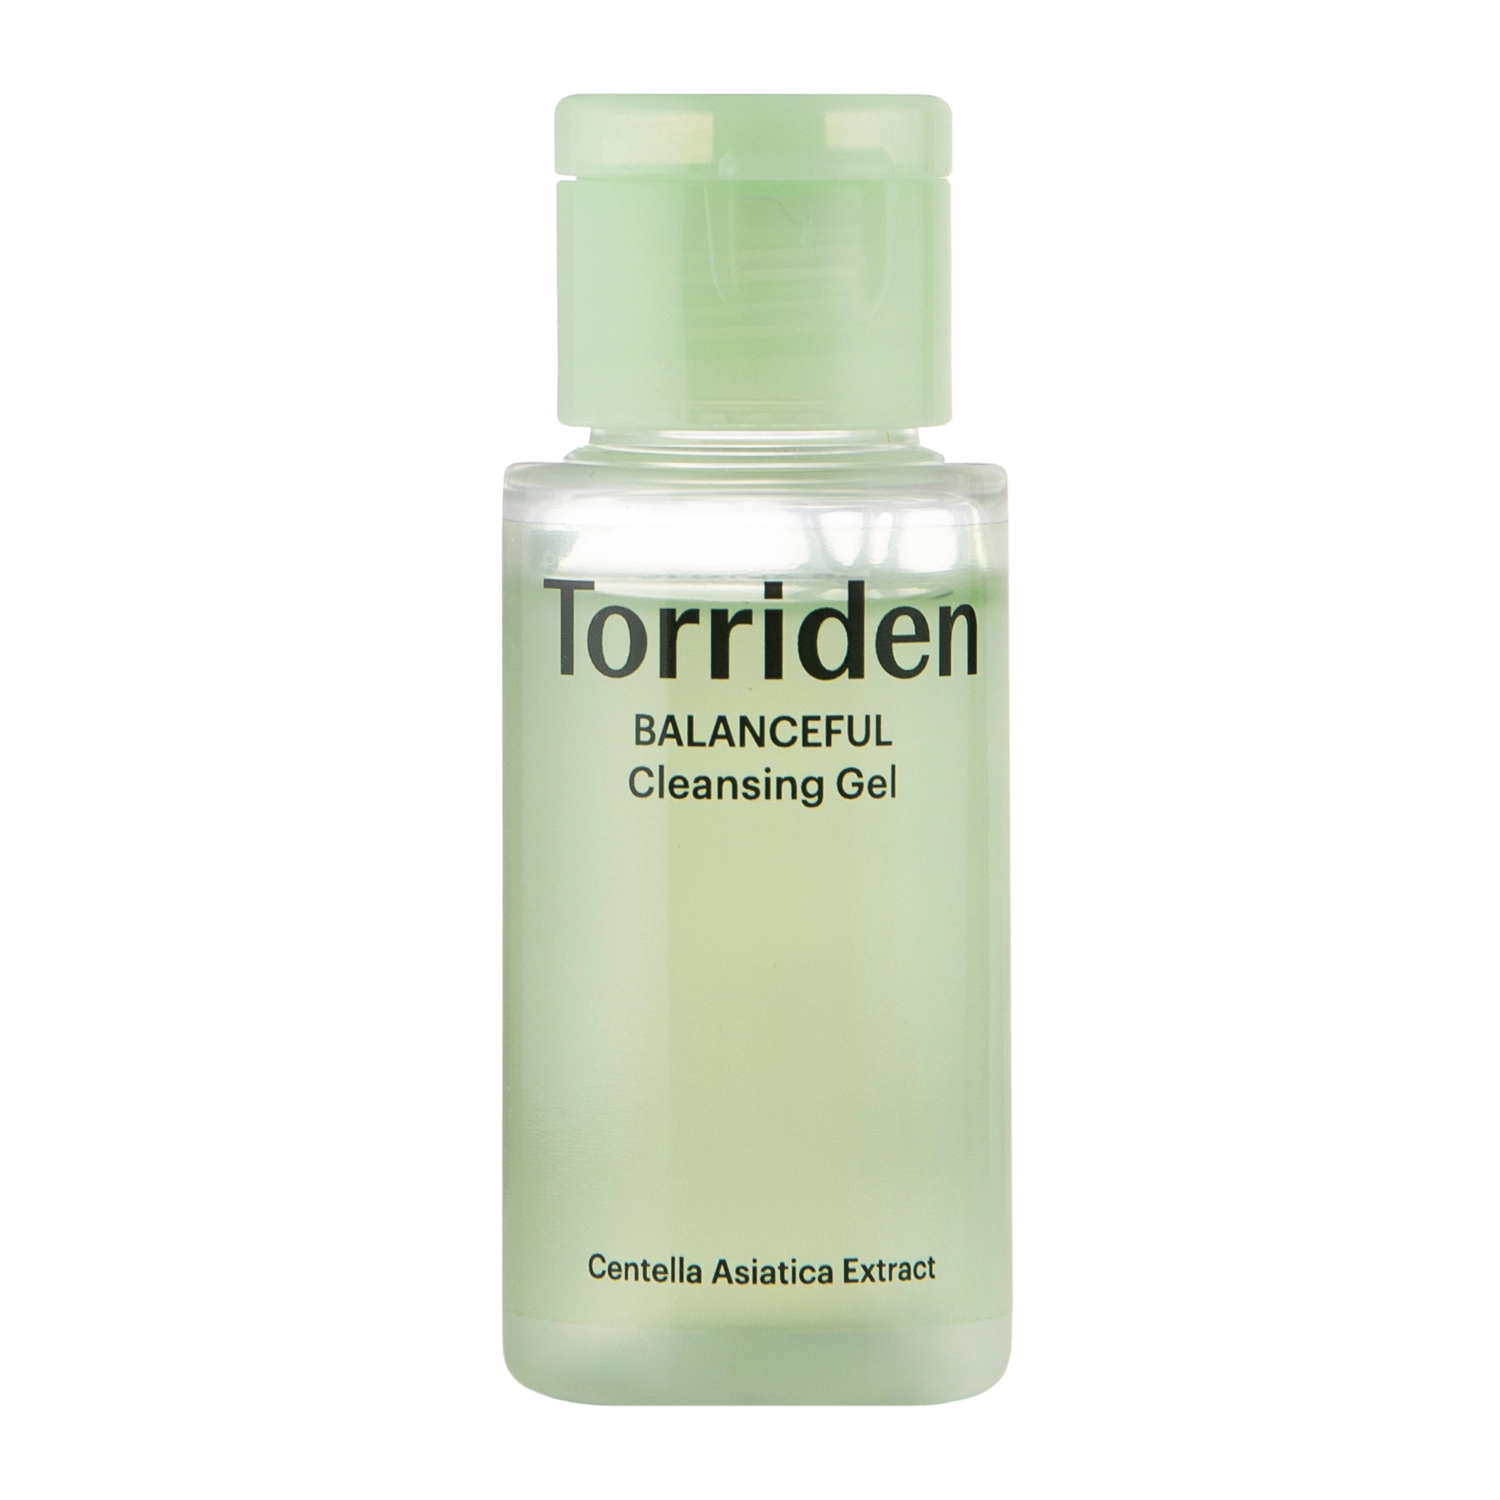 Torriden - Balanceful Cleansing Gel - Гель для умывания лица с центеллой азиатской - 30ml